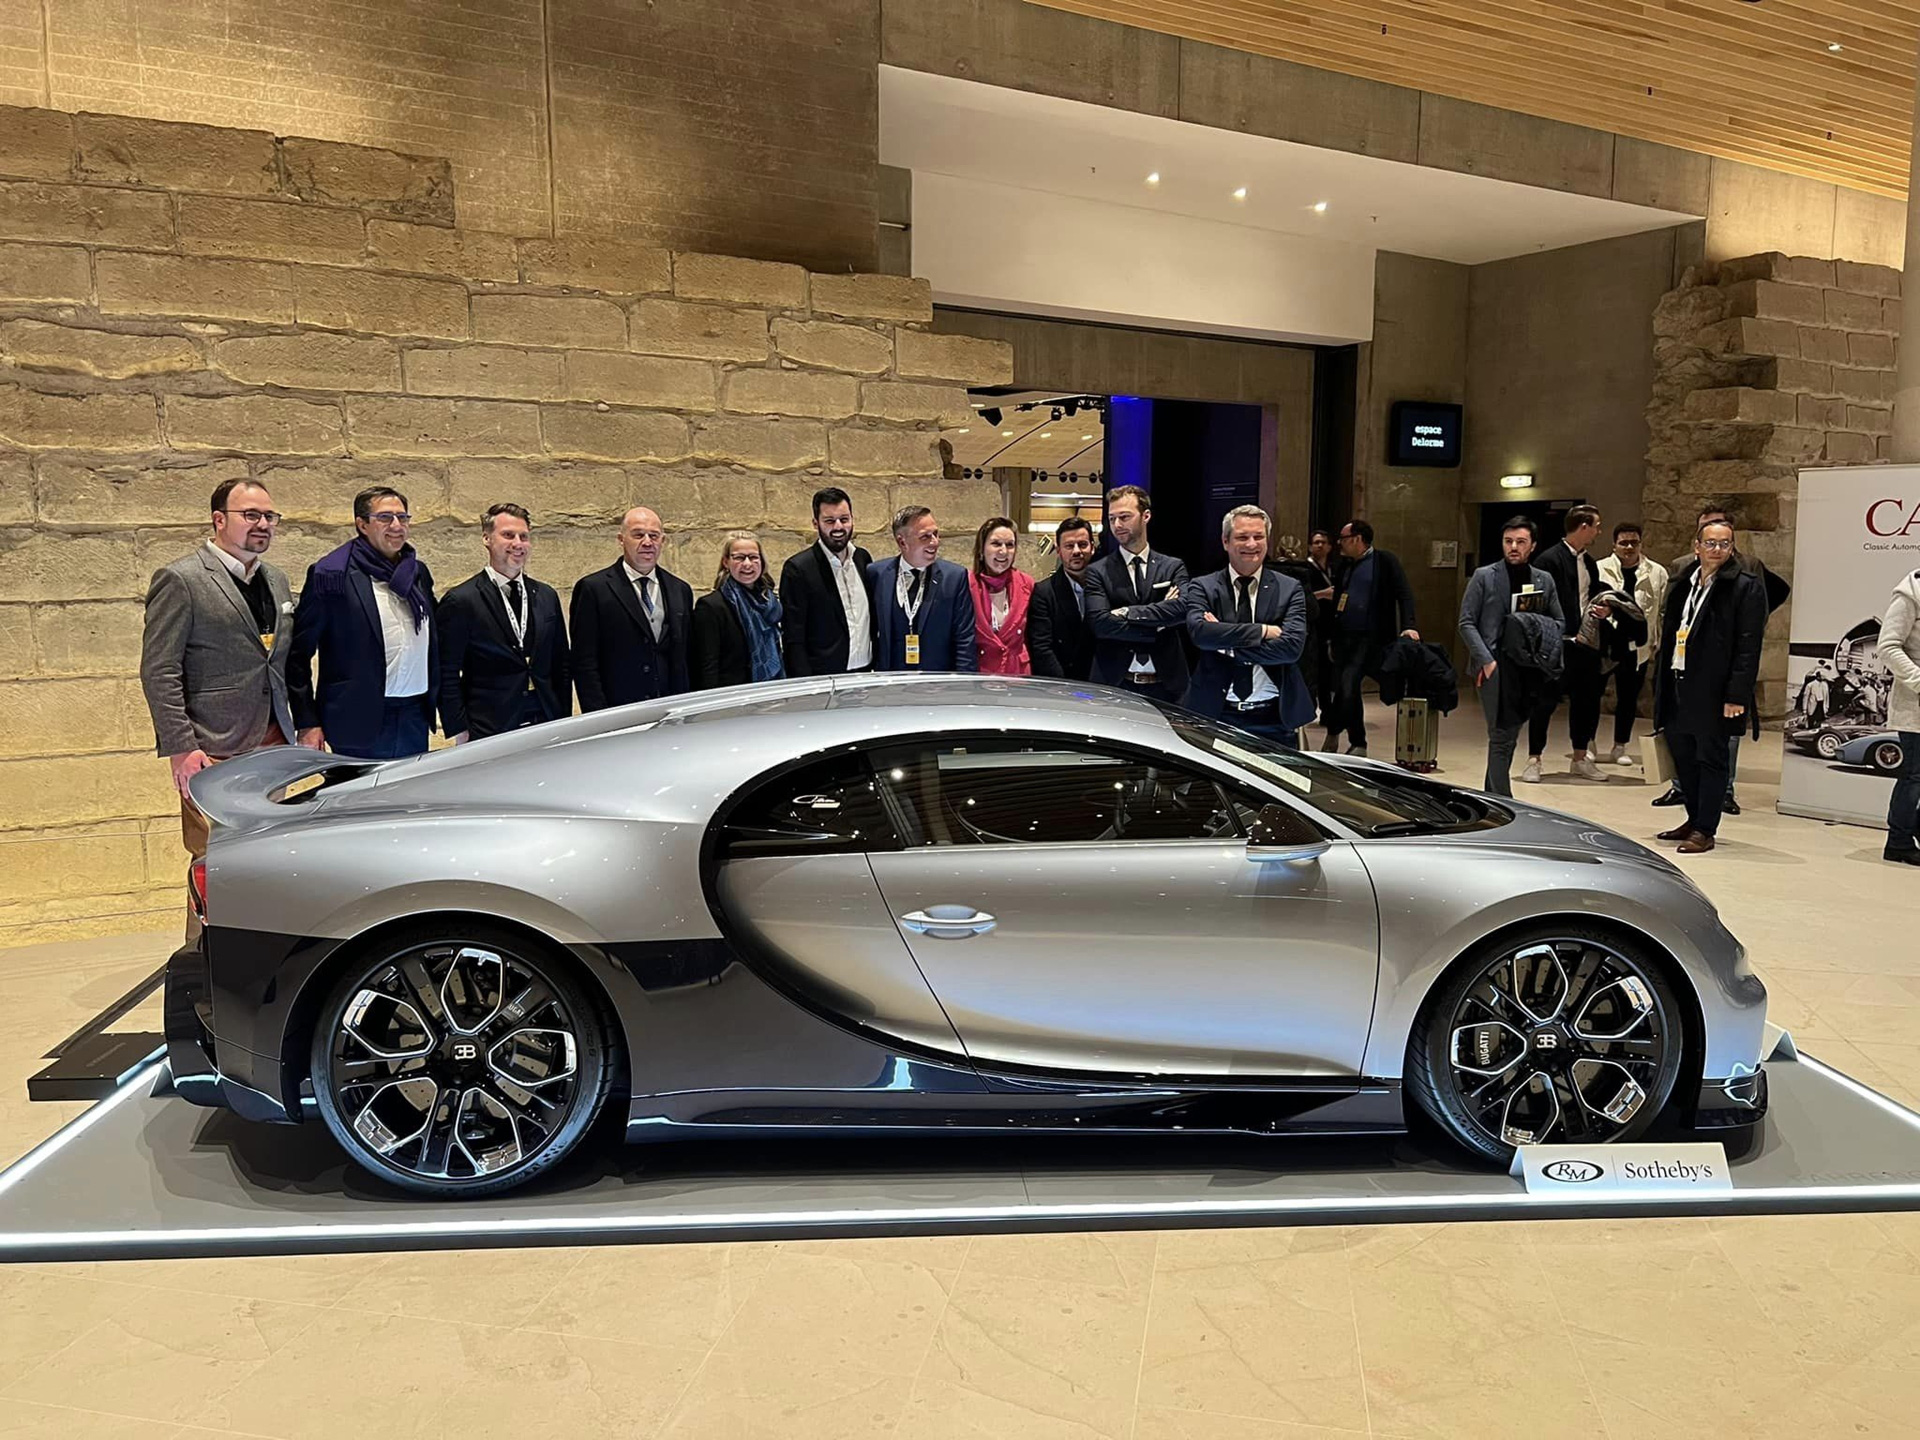 Kỷ lục xe đấu giá đắt nhất thế giới chạm mốc 300 tỉ đồng là Bugatti Chiron Profilee - Ảnh 2.